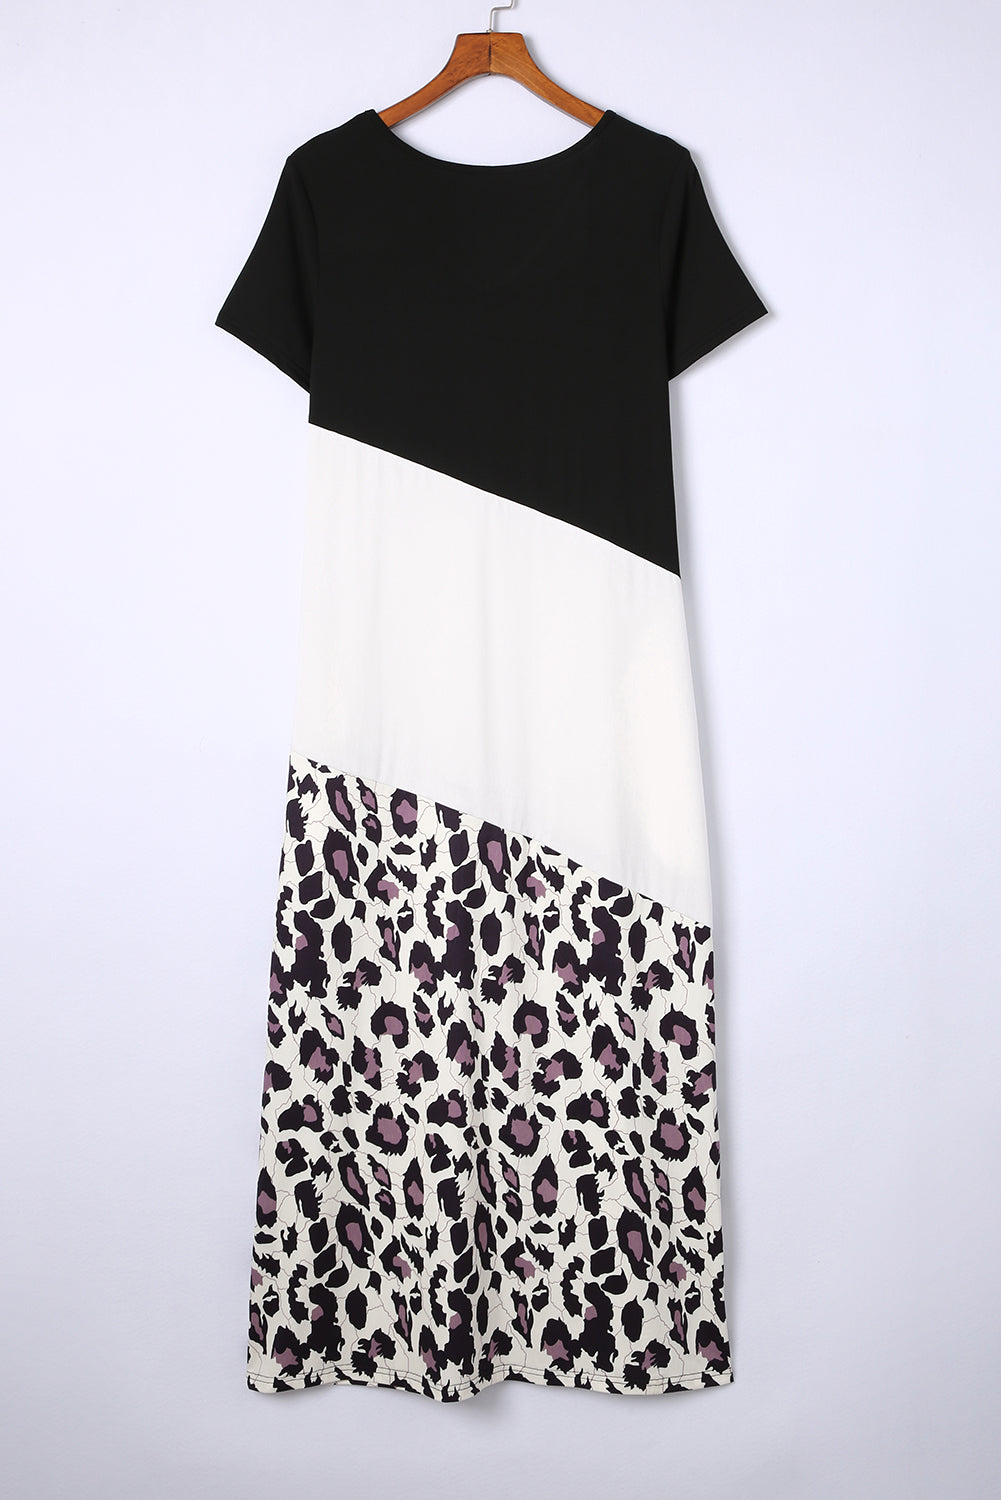 Crna majica kratkih rukava s leopard blokovima boja s prorezom, maksi haljina